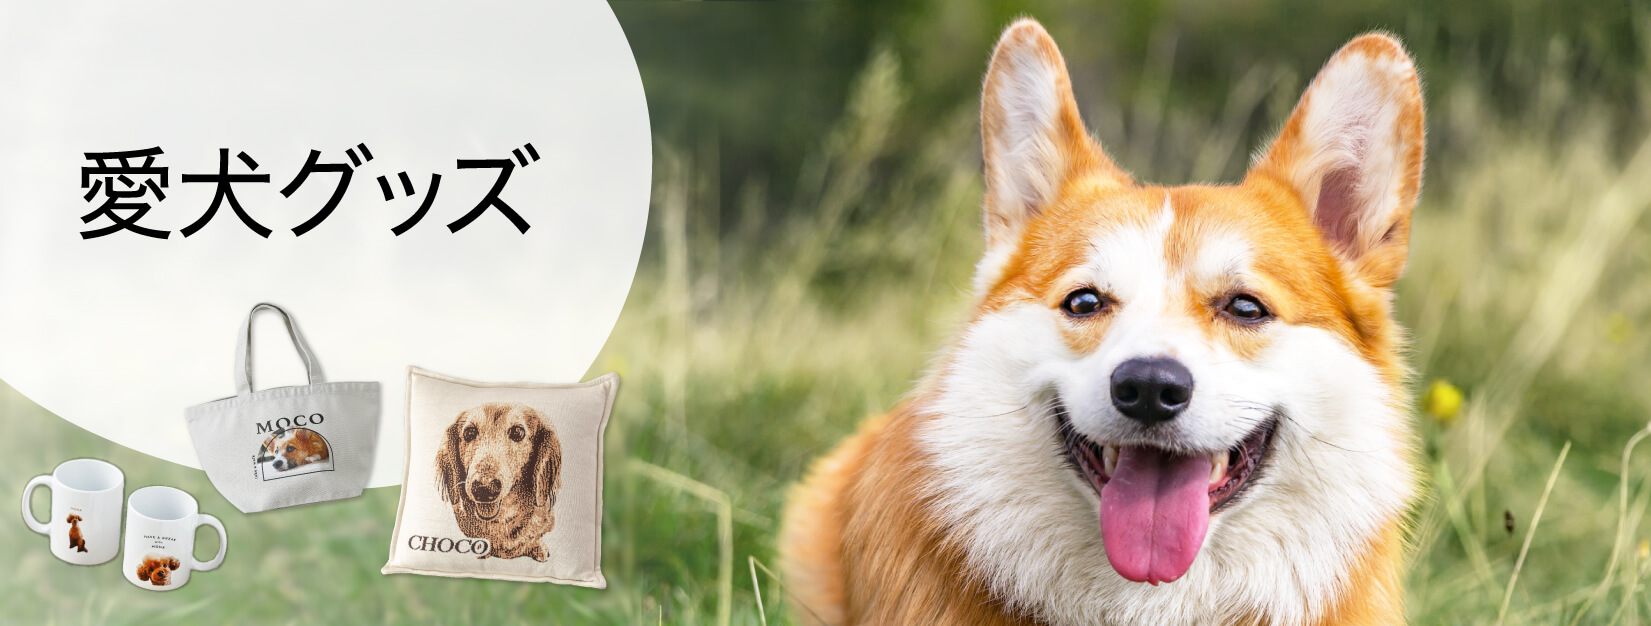 愛犬の写真で作るオリジナルグッズ|80種類以上！ペットの写真で作るオーダーメイドグッズ専門店